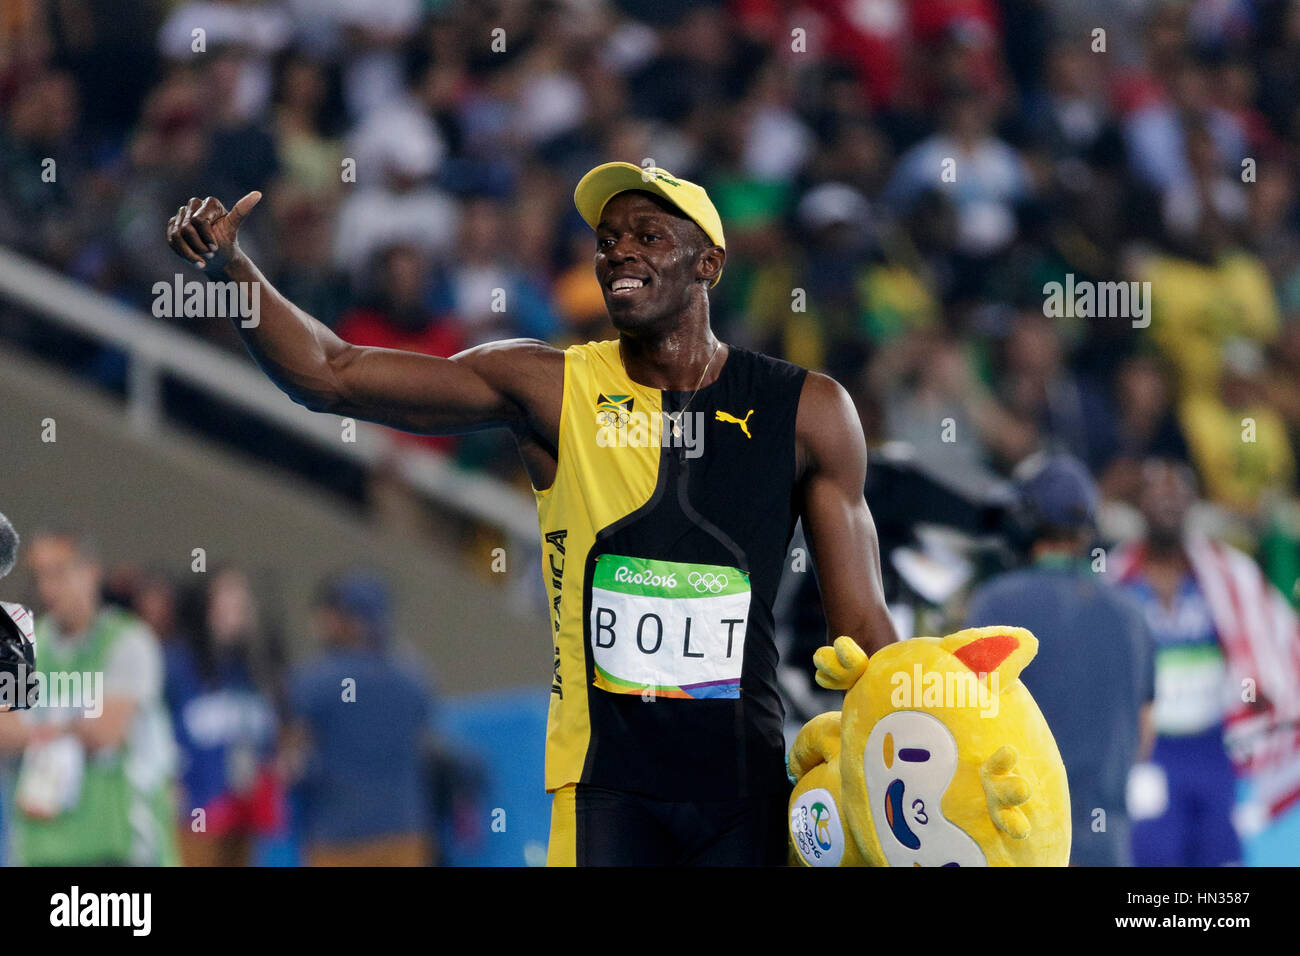 Río de Janeiro, Brasil. 14 de agosto de 2016. El atletismo, el Perno Usian (JAM) gana la medalla de oro en la final masculina de los 100 metros en los Juegos Olímpicos de Verano de 2016. ©Paul J. Foto de stock